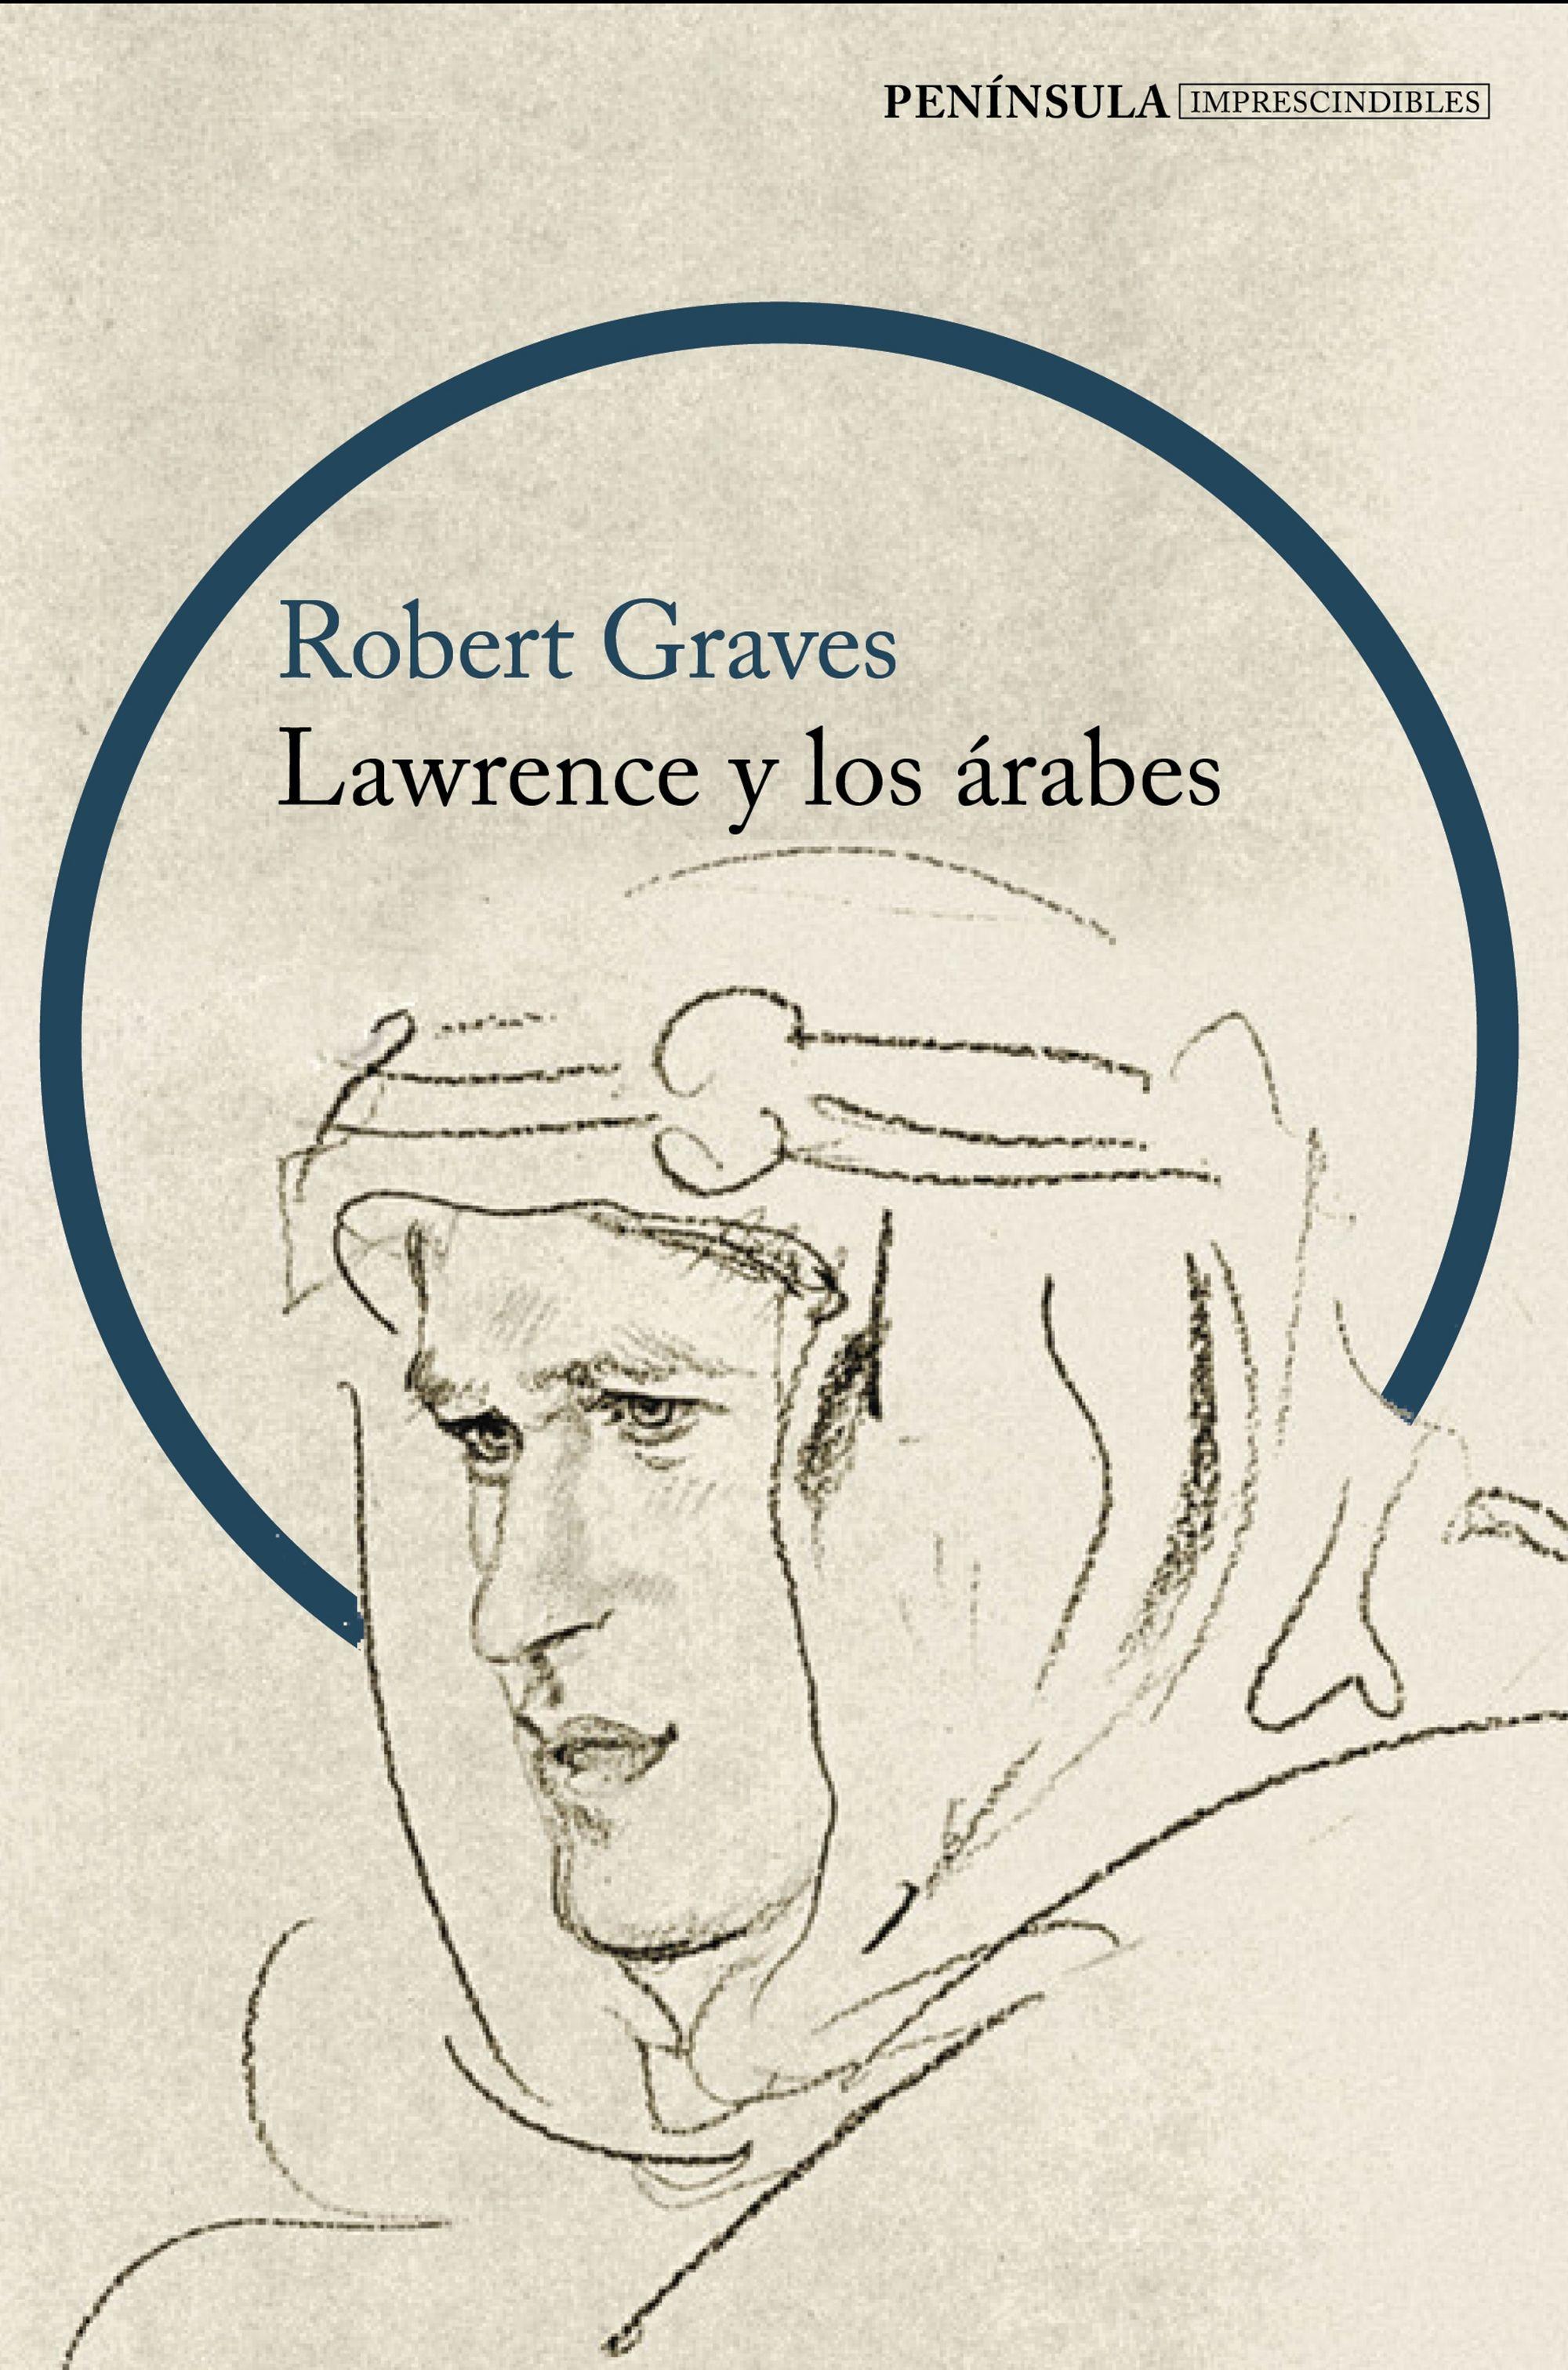 Lawrence y los árabes "Un retrato fascinante de Lawrence de Arabia"